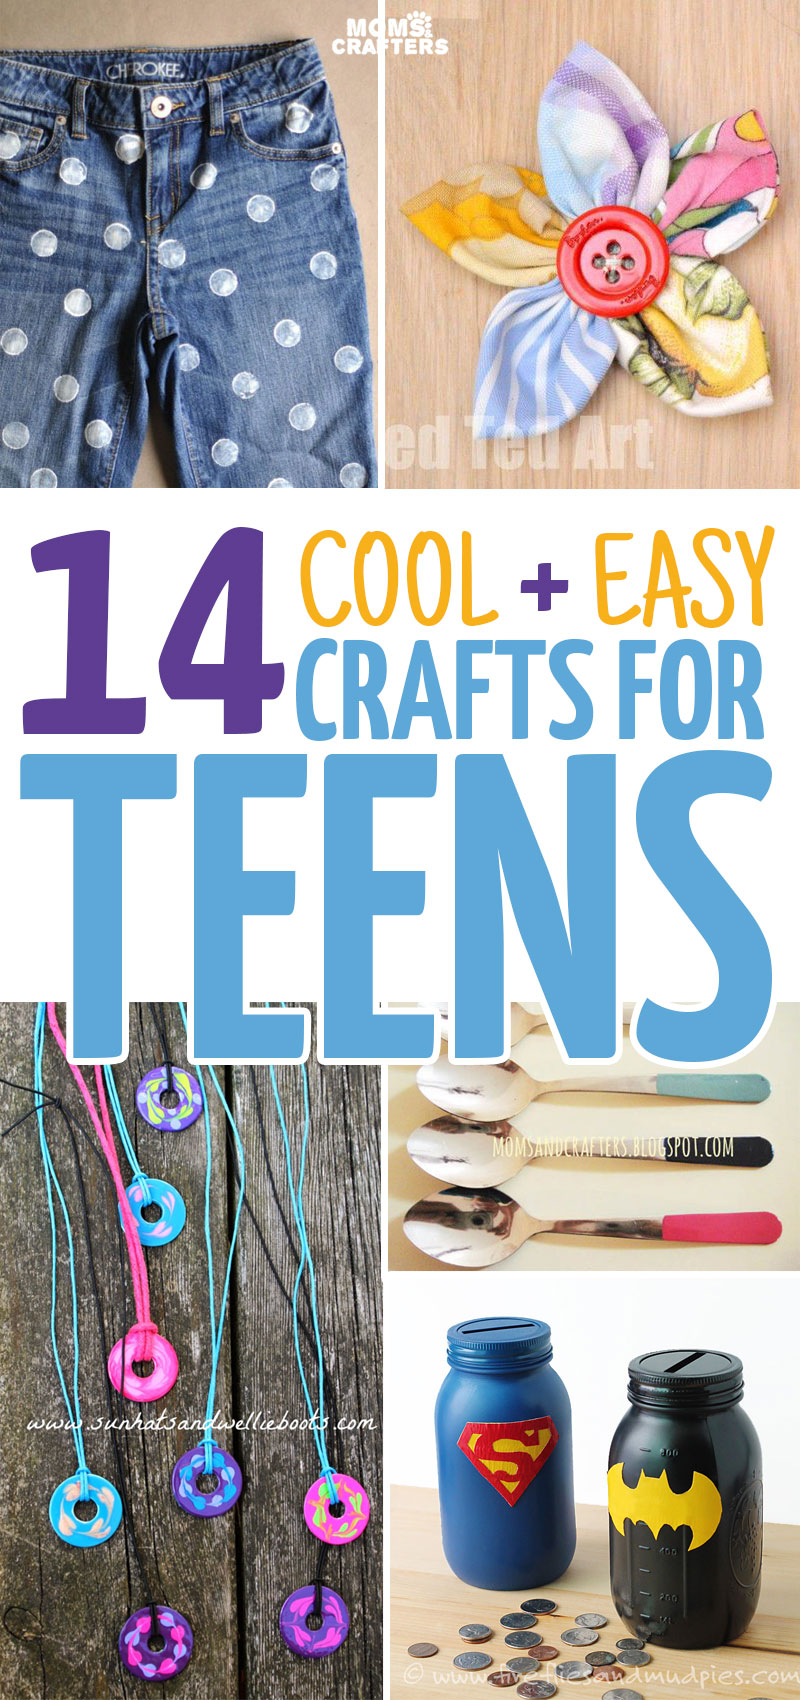 https://www.momsandcrafters.com/wp-content/uploads/2014/10/crafts-for-teens-v.jpg.webp